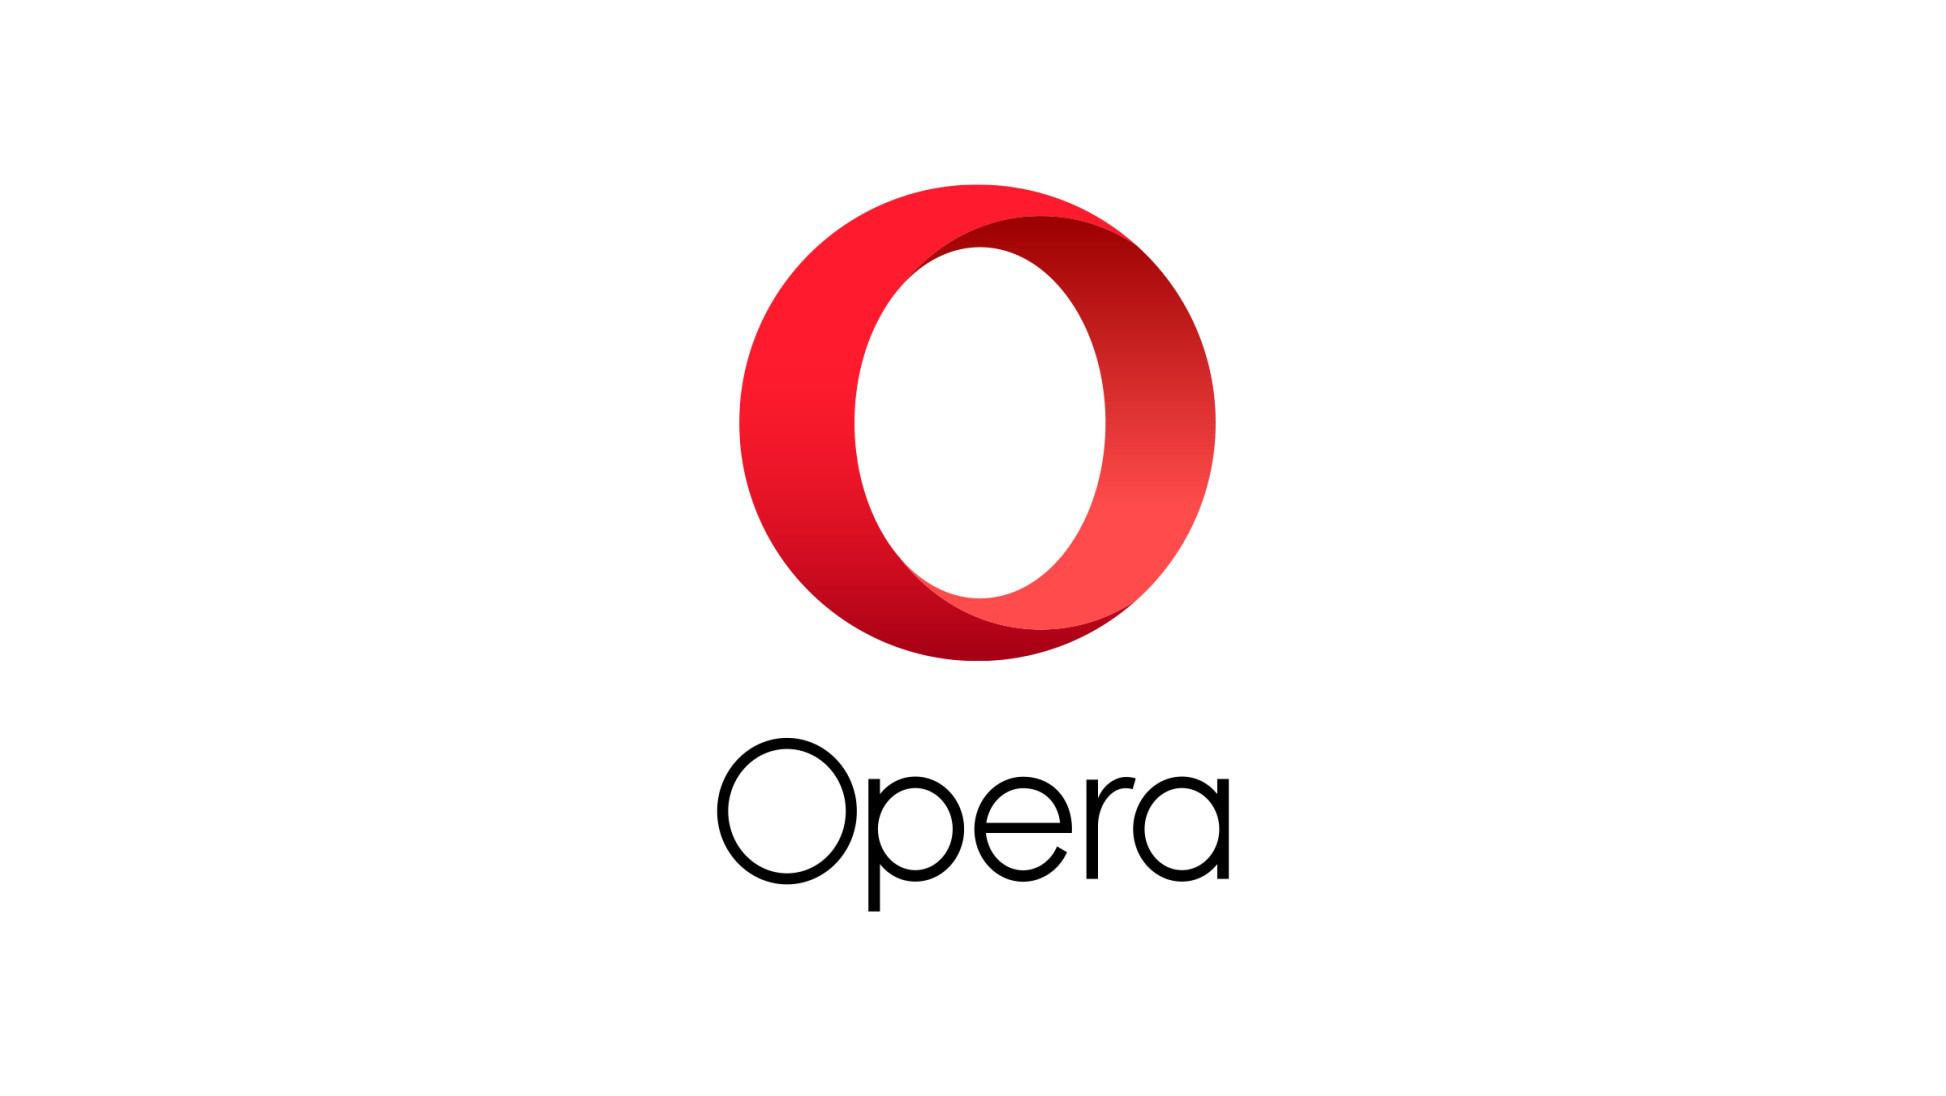 Opera вбудувала в браузер захист від прихованого майнінгу криптовалют. Компанія Opera представила бета-версію десктопного браузера Opera 50, в якій з'явився вбудований захист від майнерів.